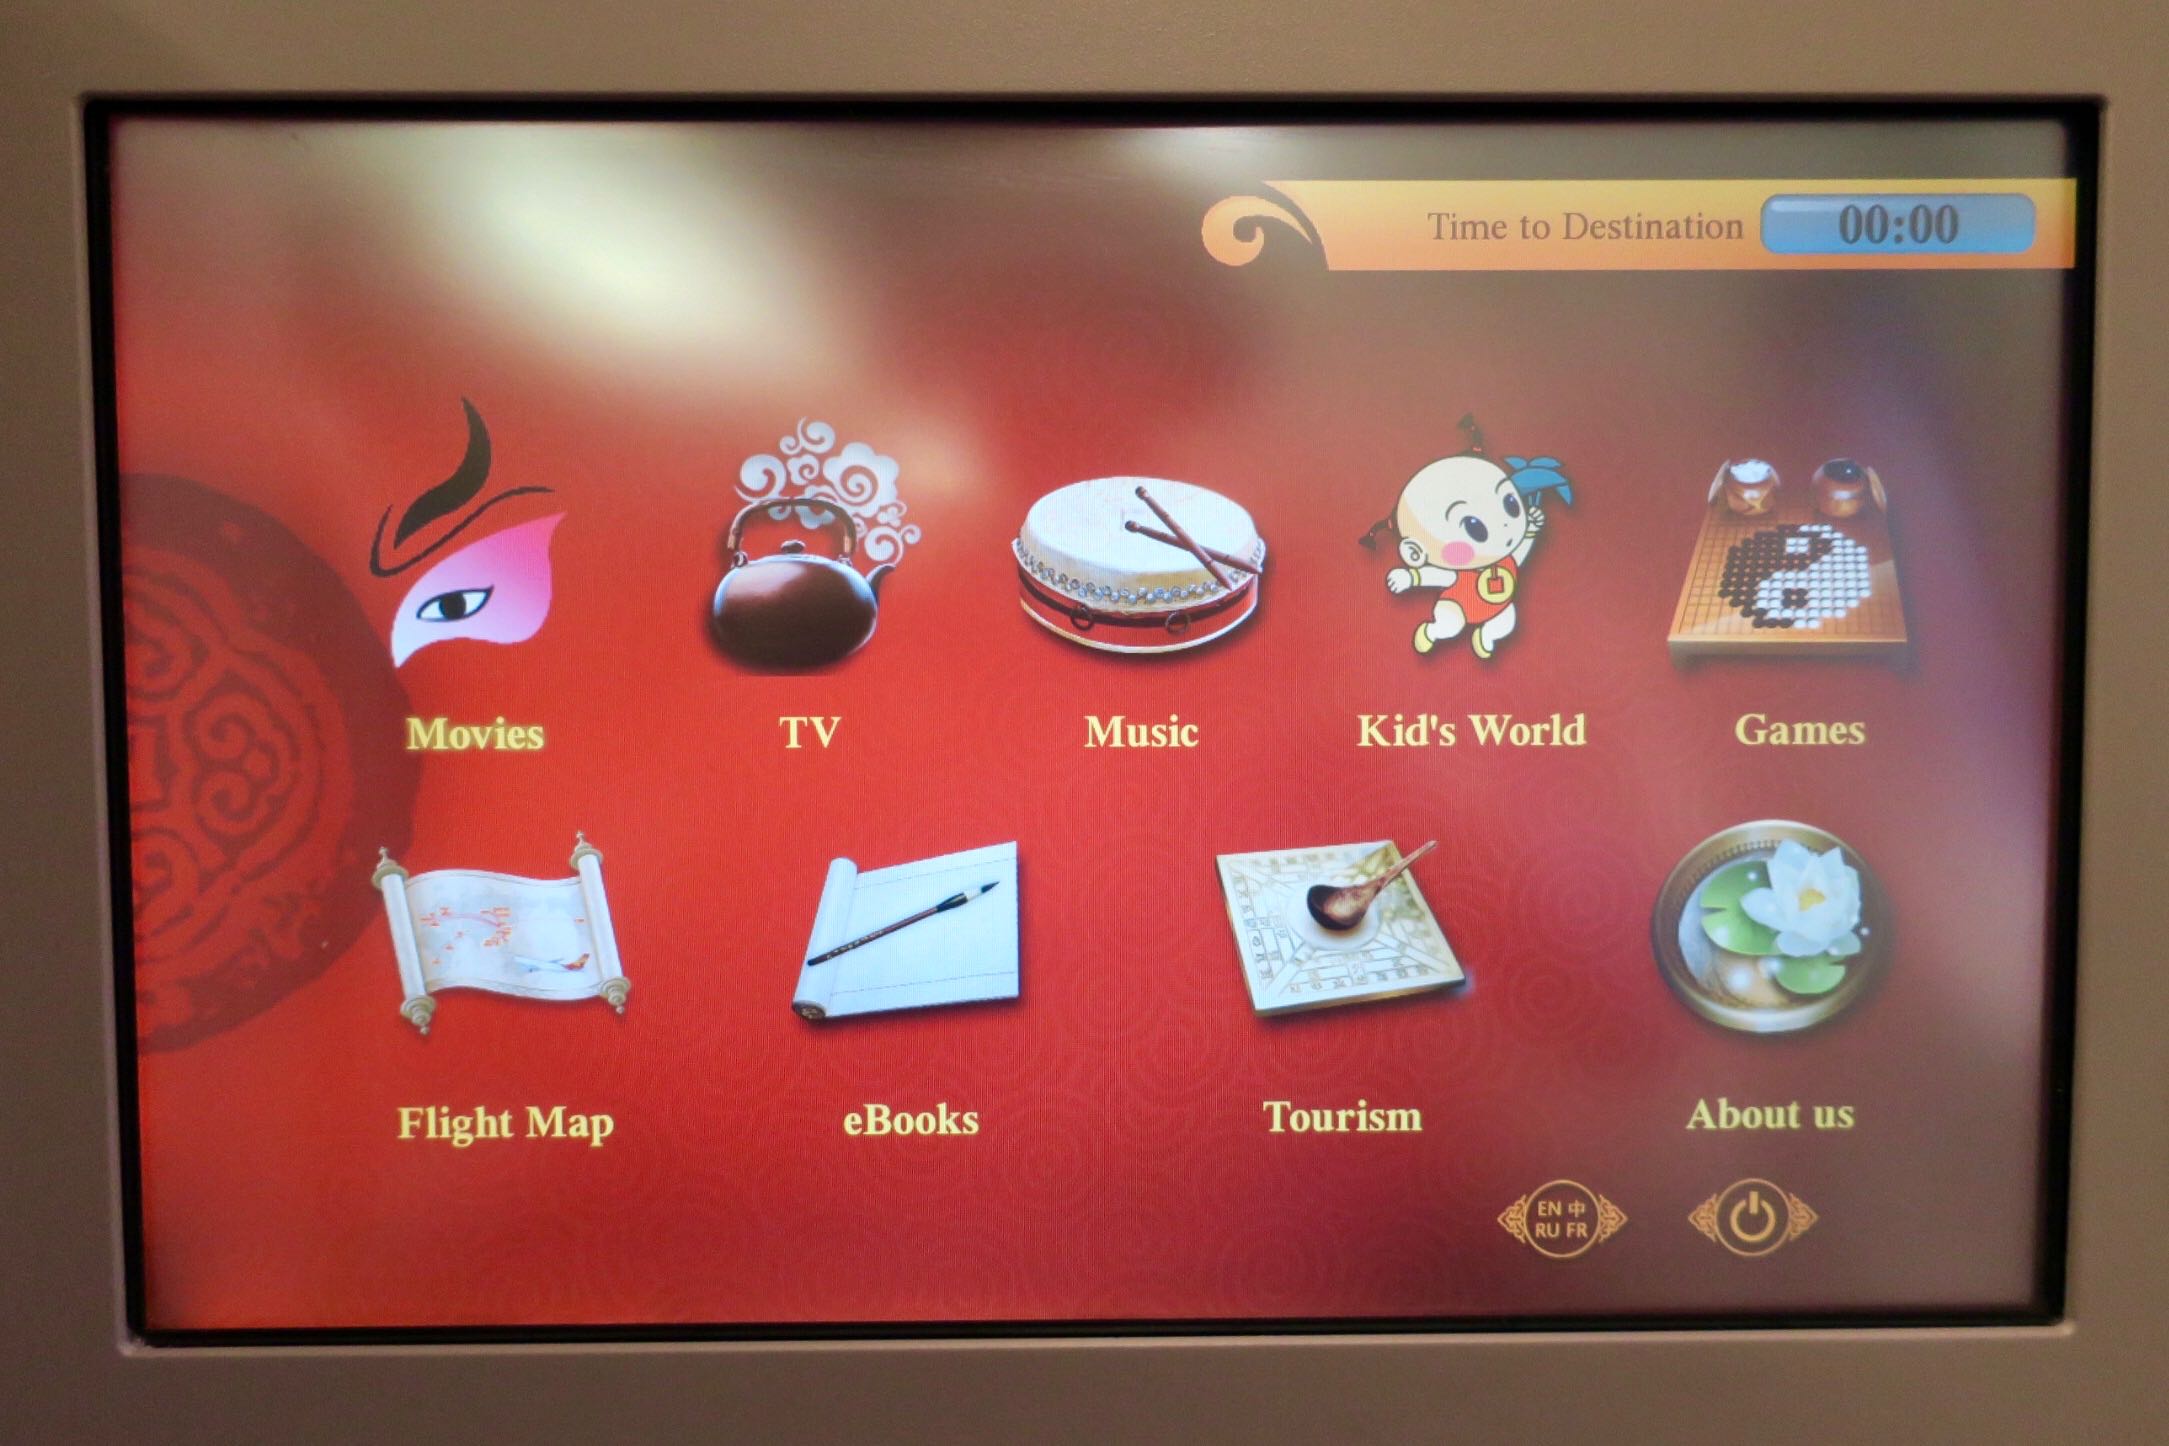 Hong Kong Airlines A330 Business Class inflight entertainment touchscreen